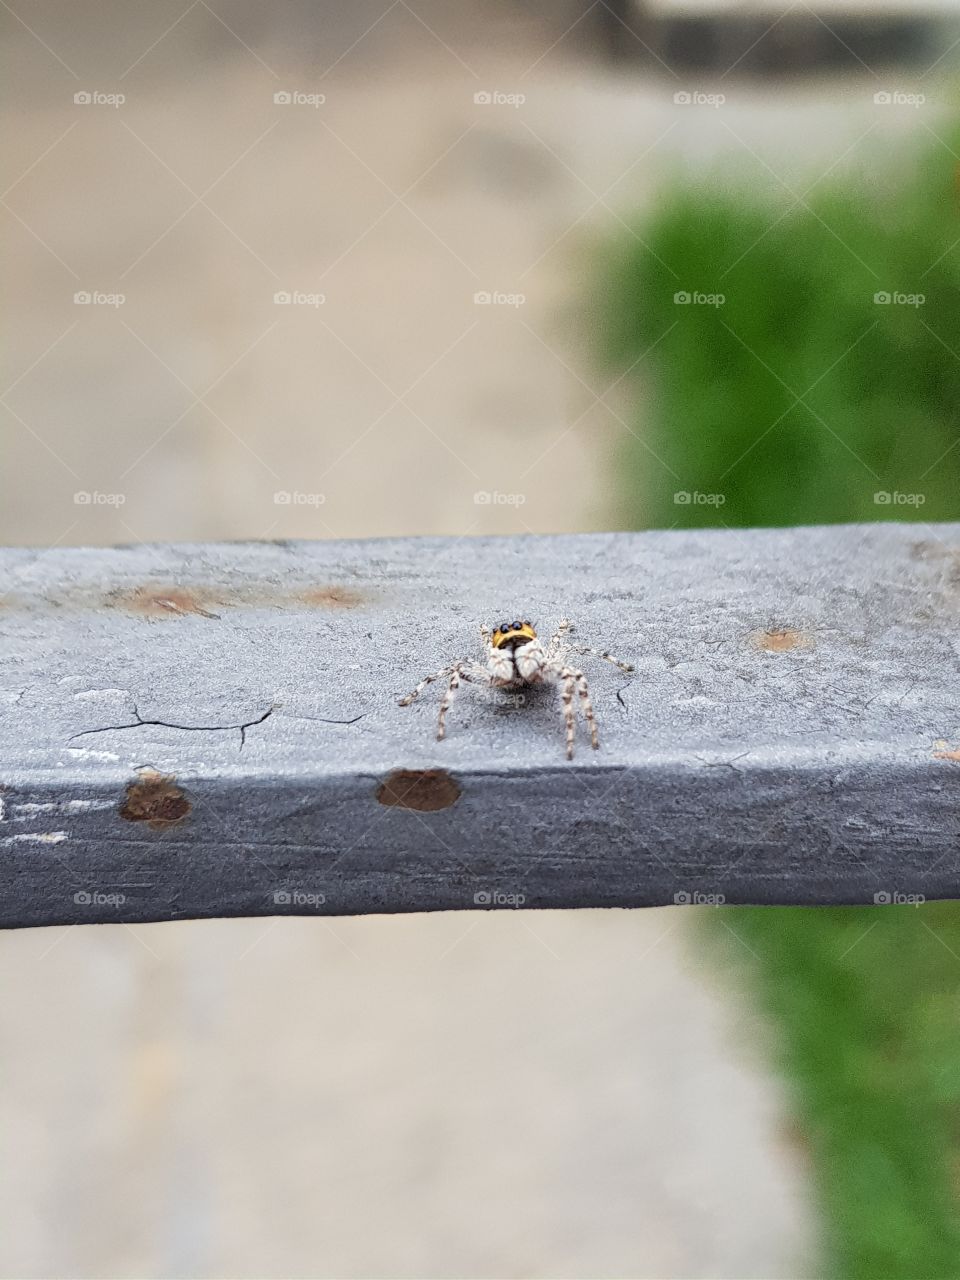 little friend spider